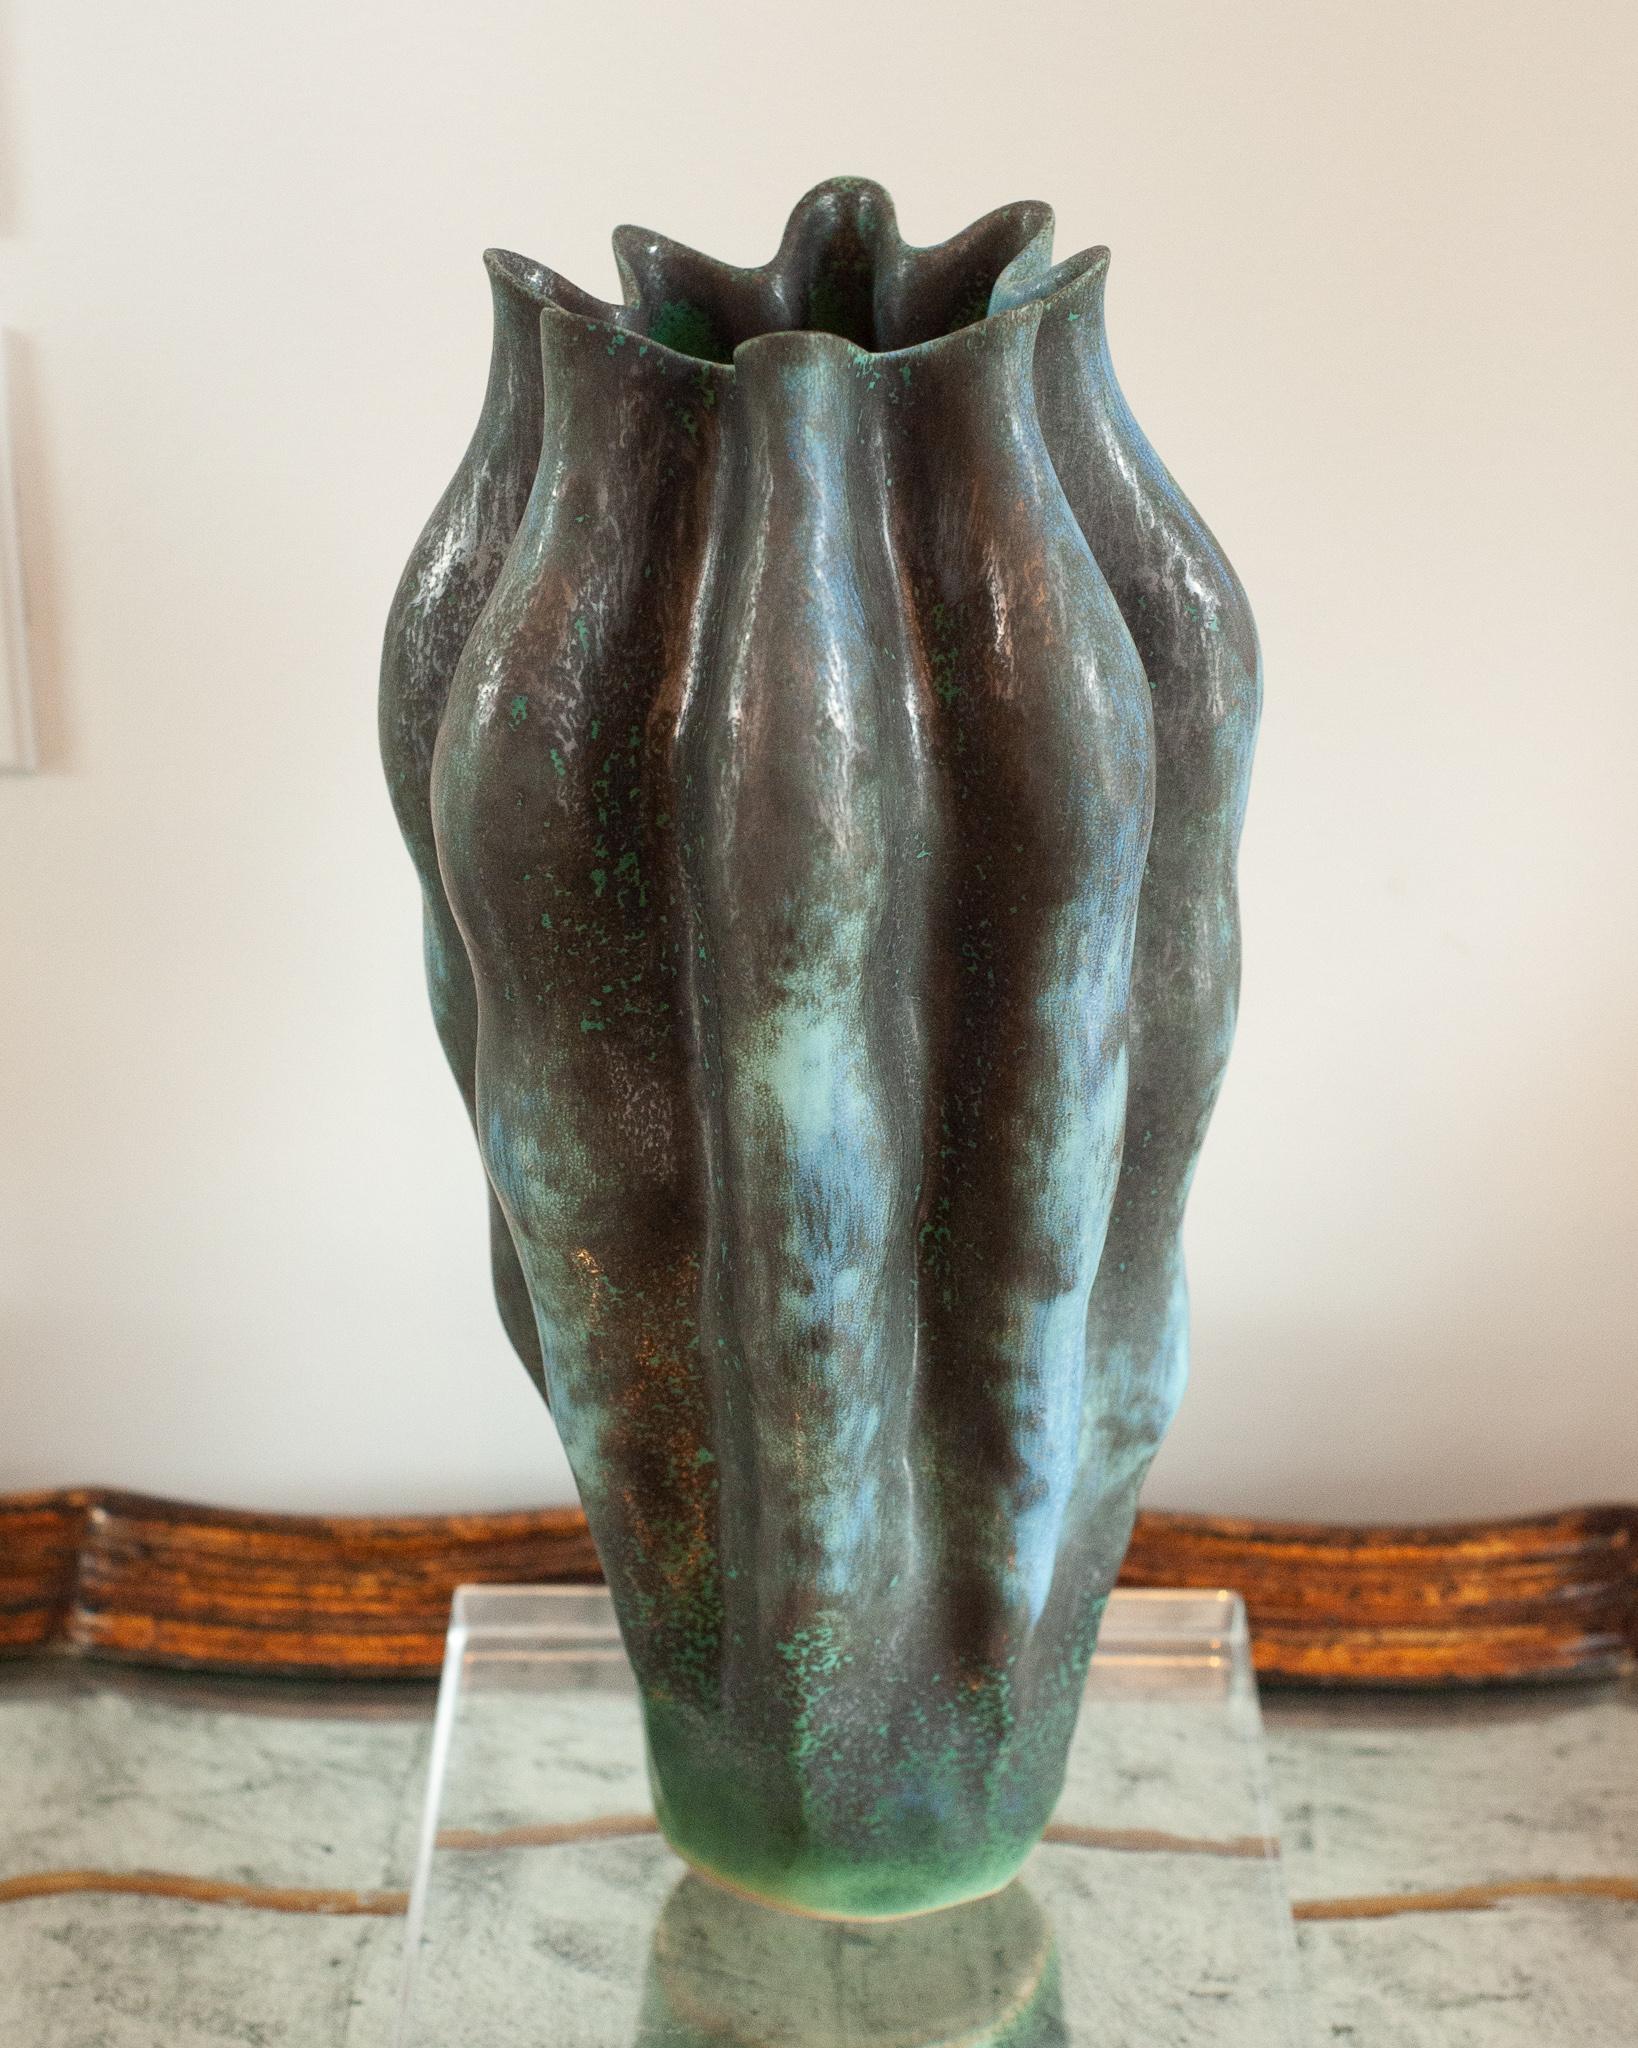 Eine schöne große Vase mit grüner und metallischer Glasur, die durch Auftragen von reaktiven Glasuren auf feines Porzellan entsteht. Die perfekte großformatige skulpturale Vase, die mit oder ohne Blumenfüllung wunderschön aussieht.